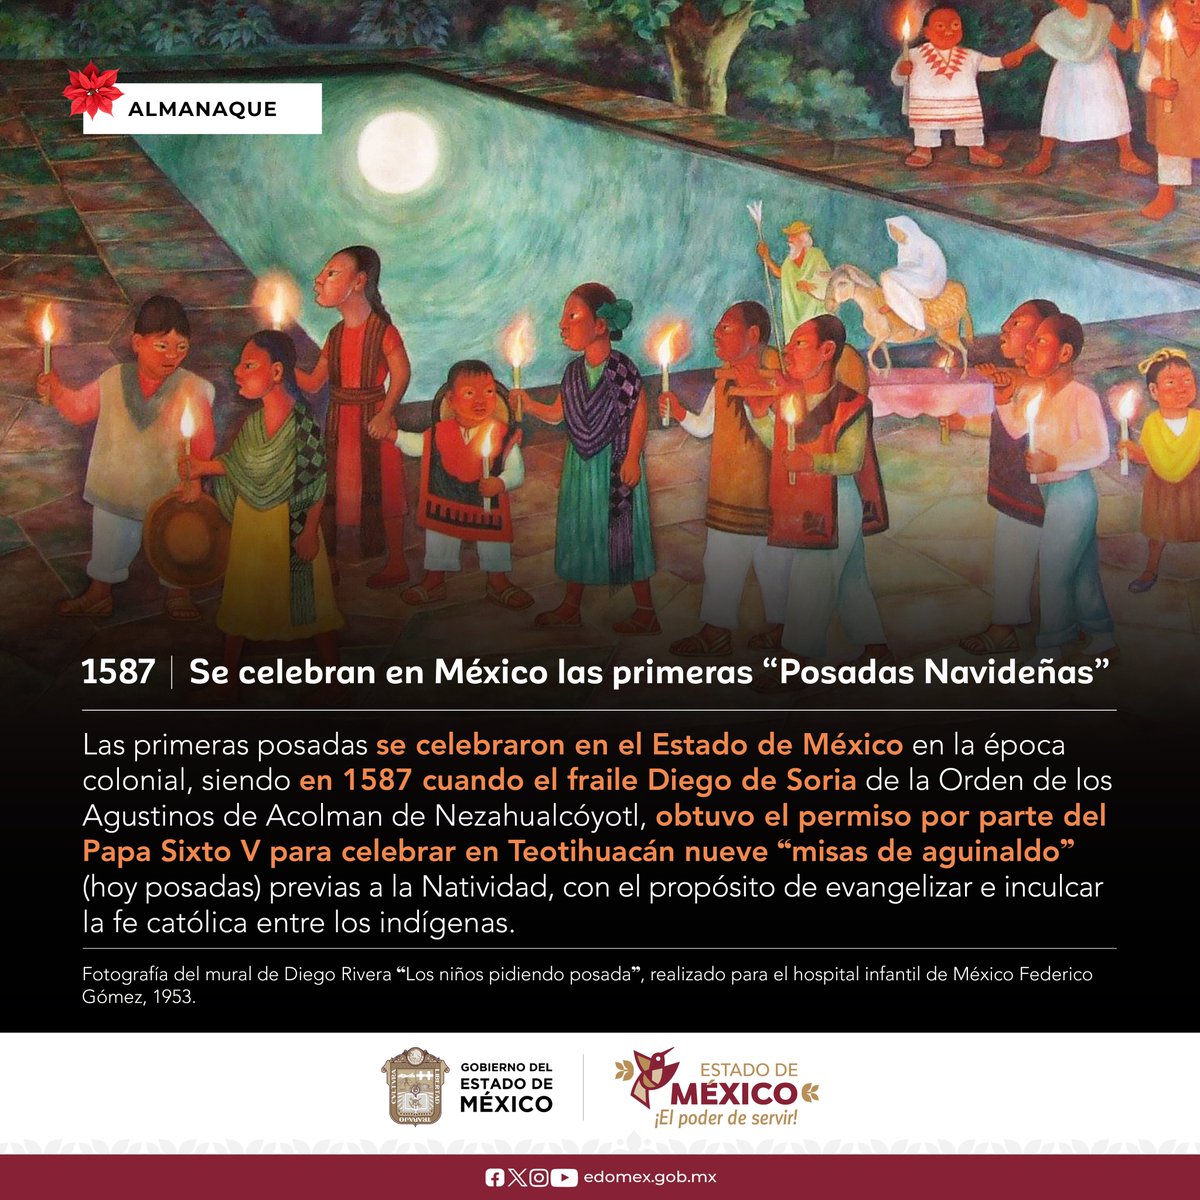 En la historia mexicana se destaca que las #PosadasNavideñas generaron un cambio radical en los aztecas, quienes llevaban a cabo el #Panquetzaliztli, la llegada del dios Huitzilopochtli durante 20 días consecutivos. #Tradiciones #Cultura #AGEMÉX